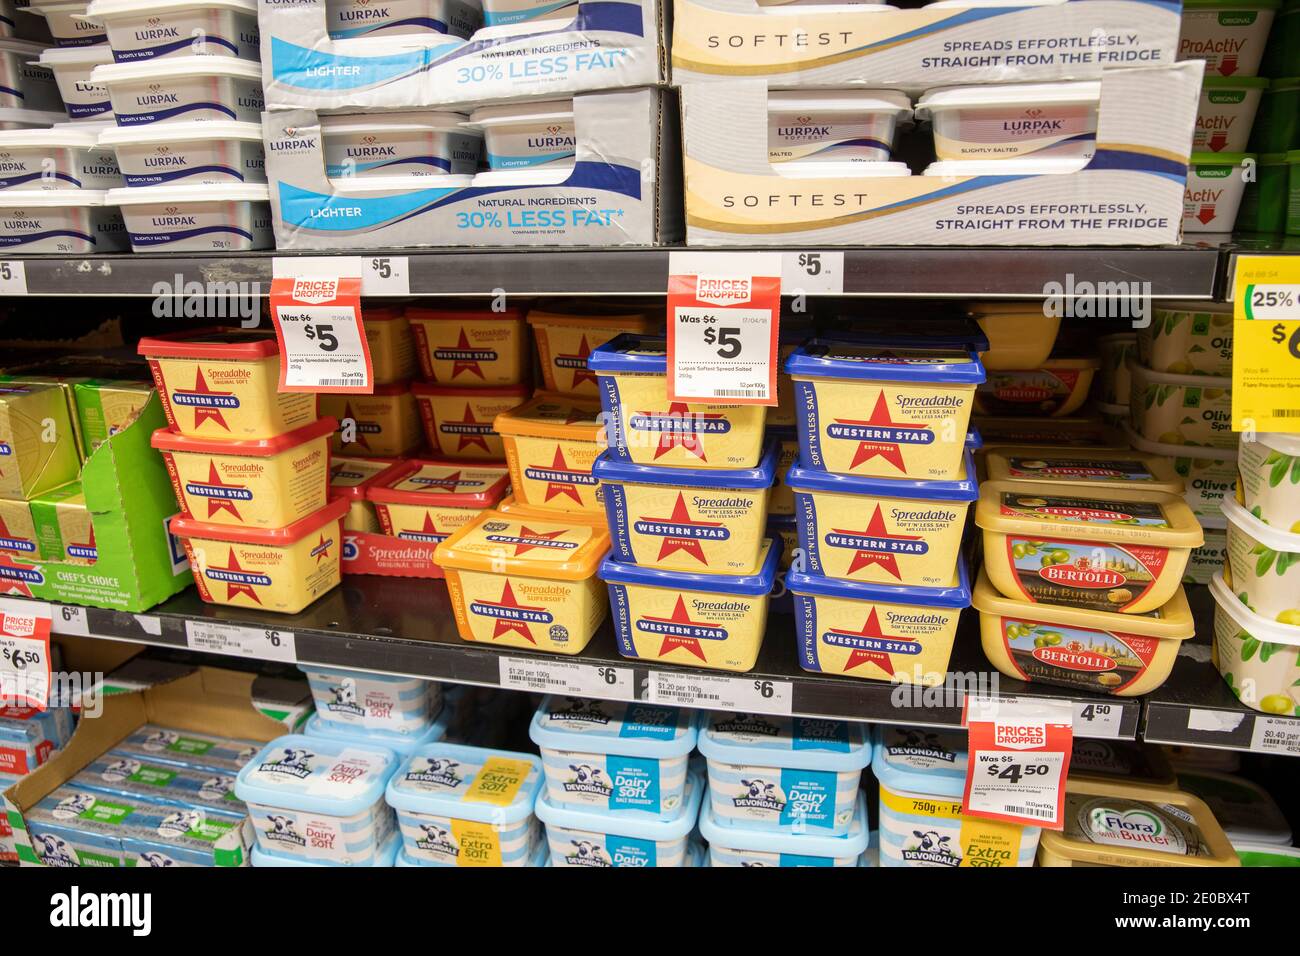 Sydney Supermarket bennes de beurre et margarine WESTERN star et lurpak à vendre dans la section réfrigérée, Sydney, Nouvelle-Galles du Sud, Australie Banque D'Images